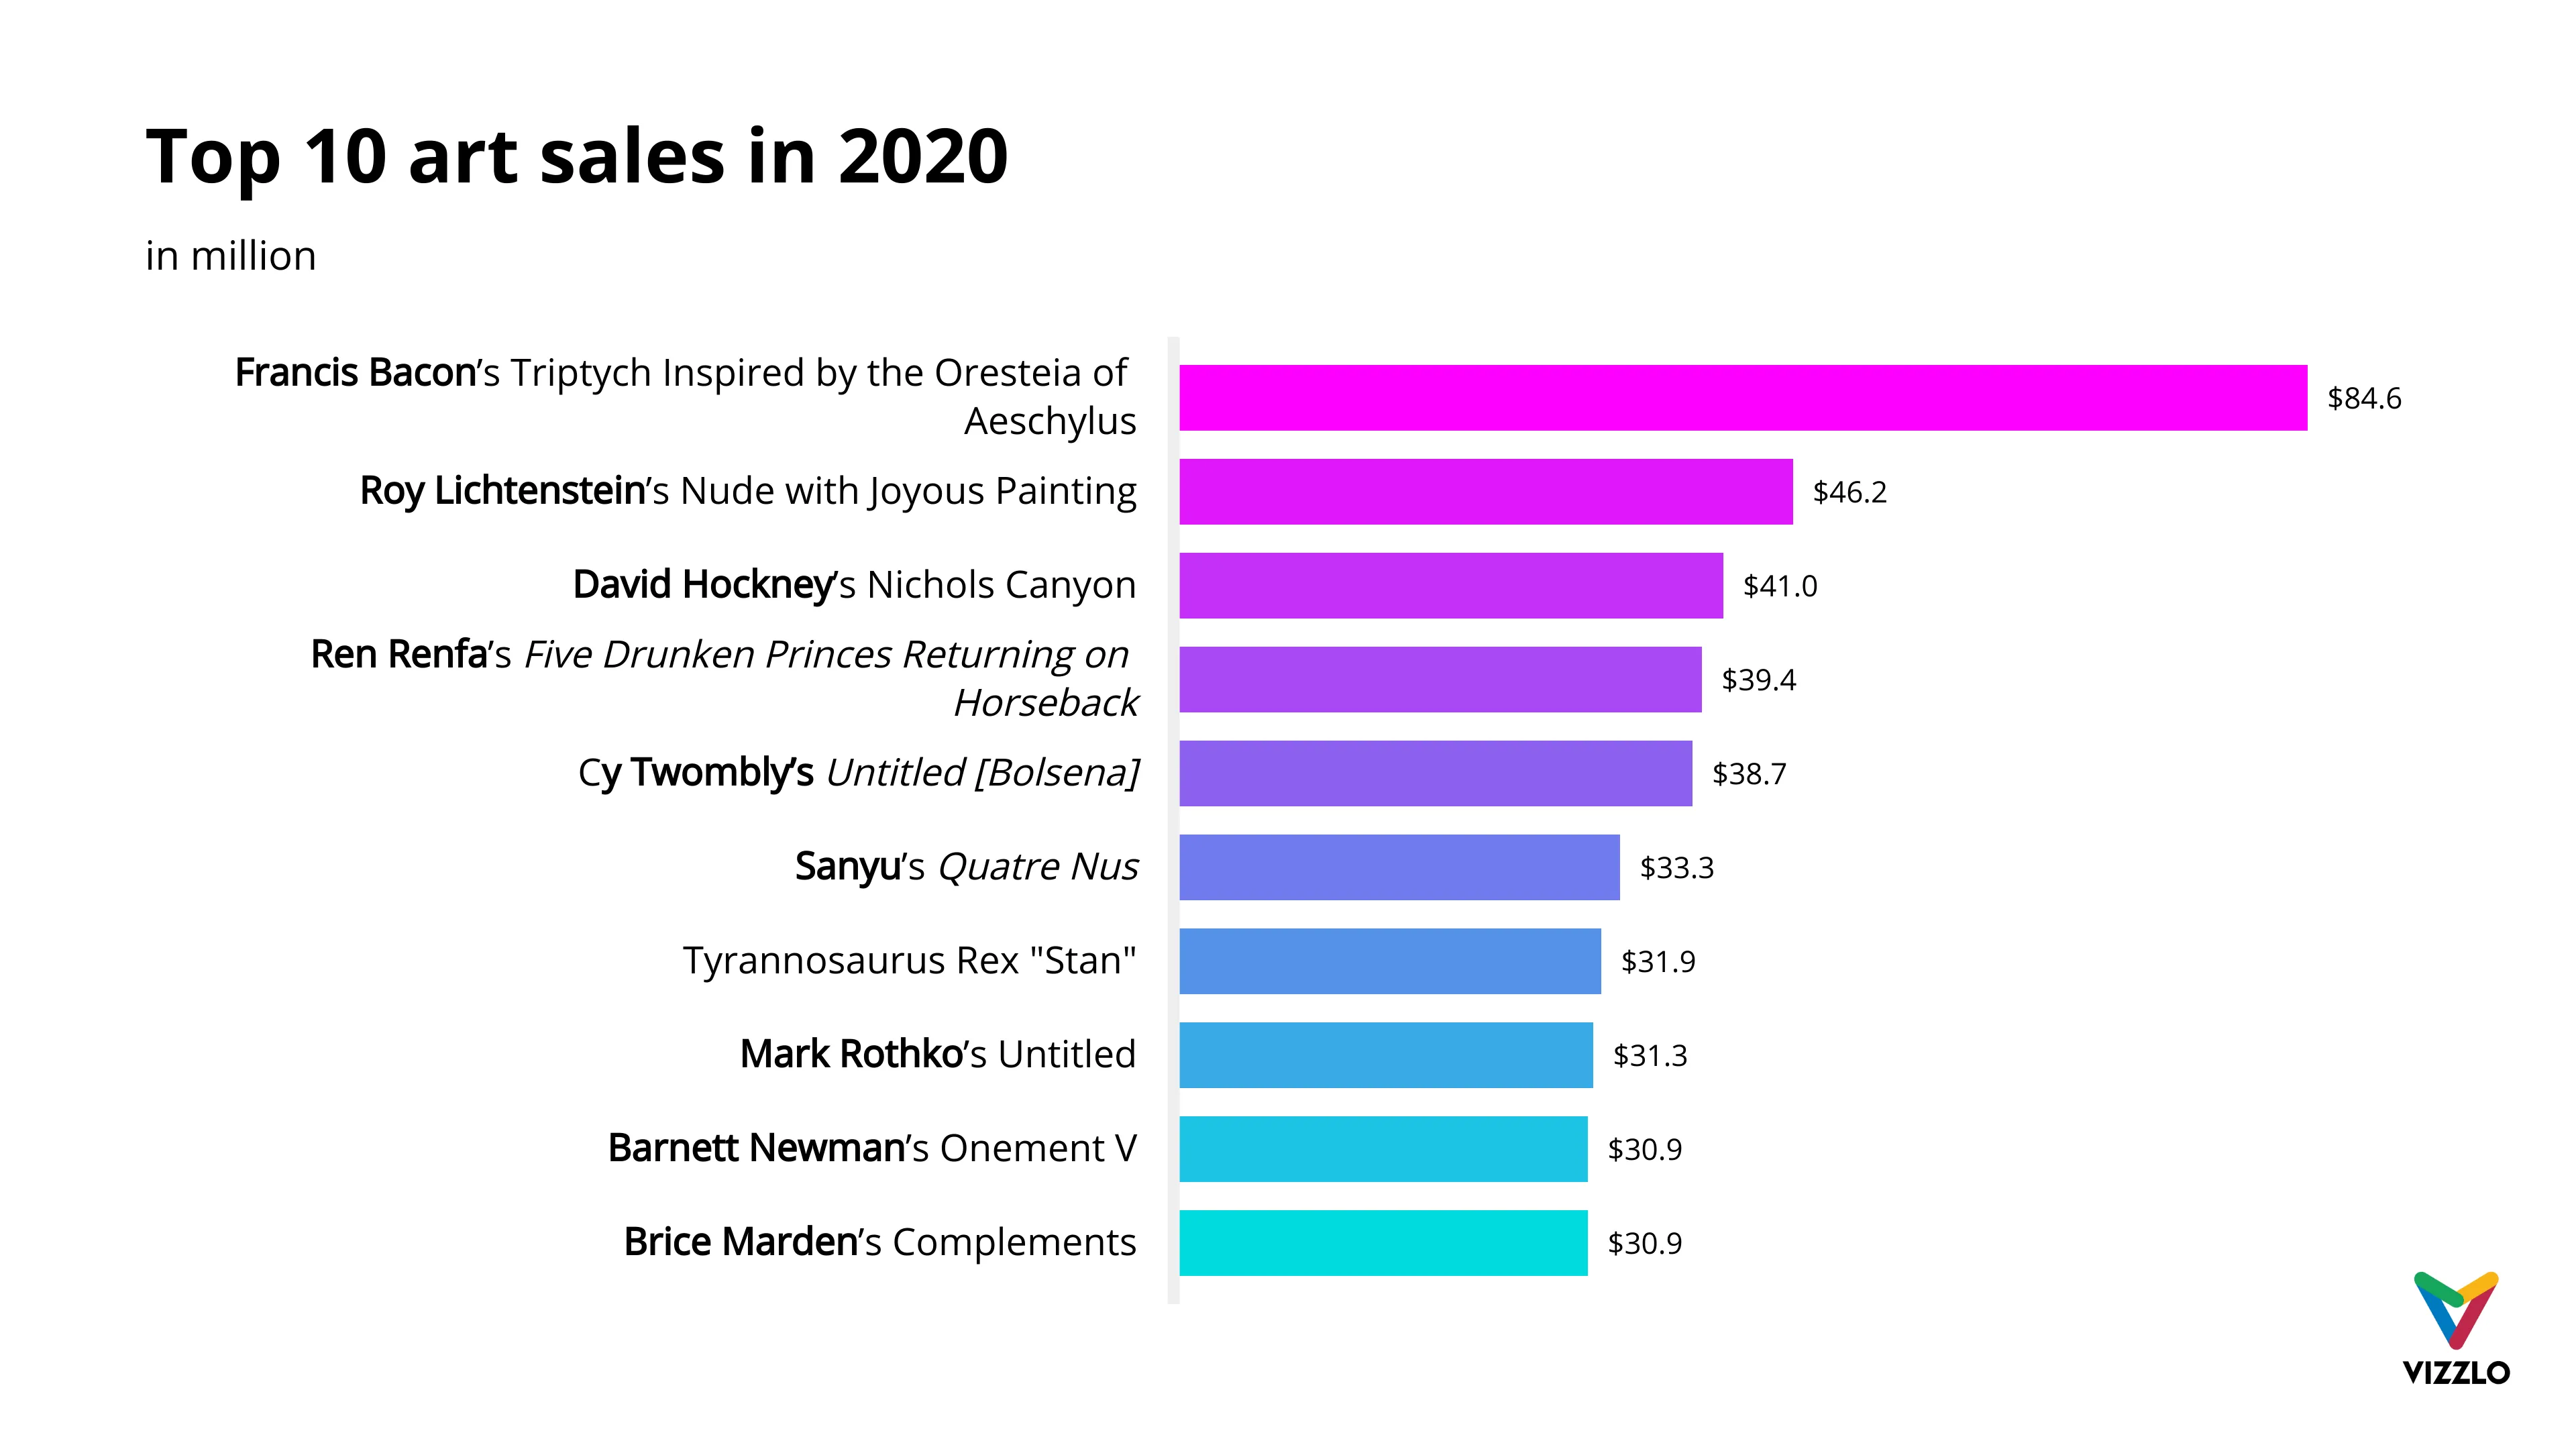 Top 10 art sales in 2020